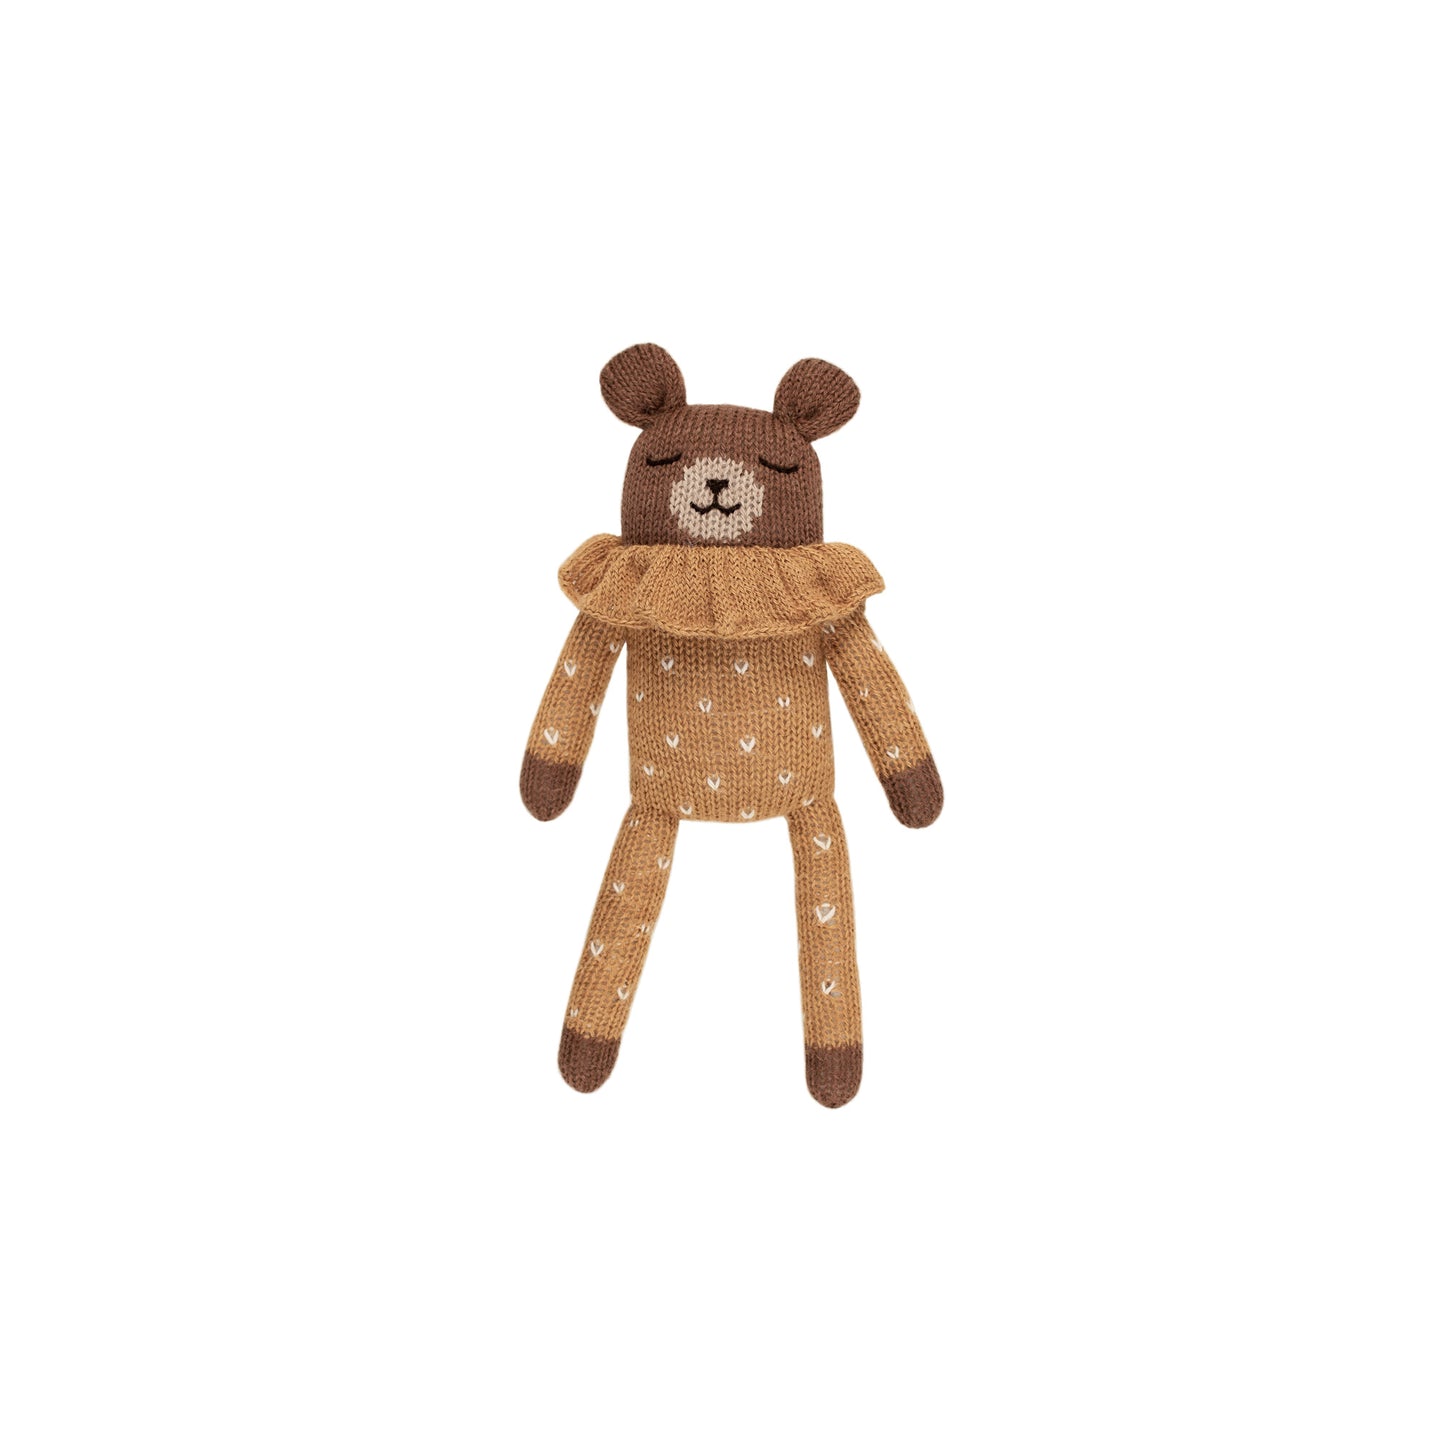 Teddy in Ochre Dotted Pyjamas